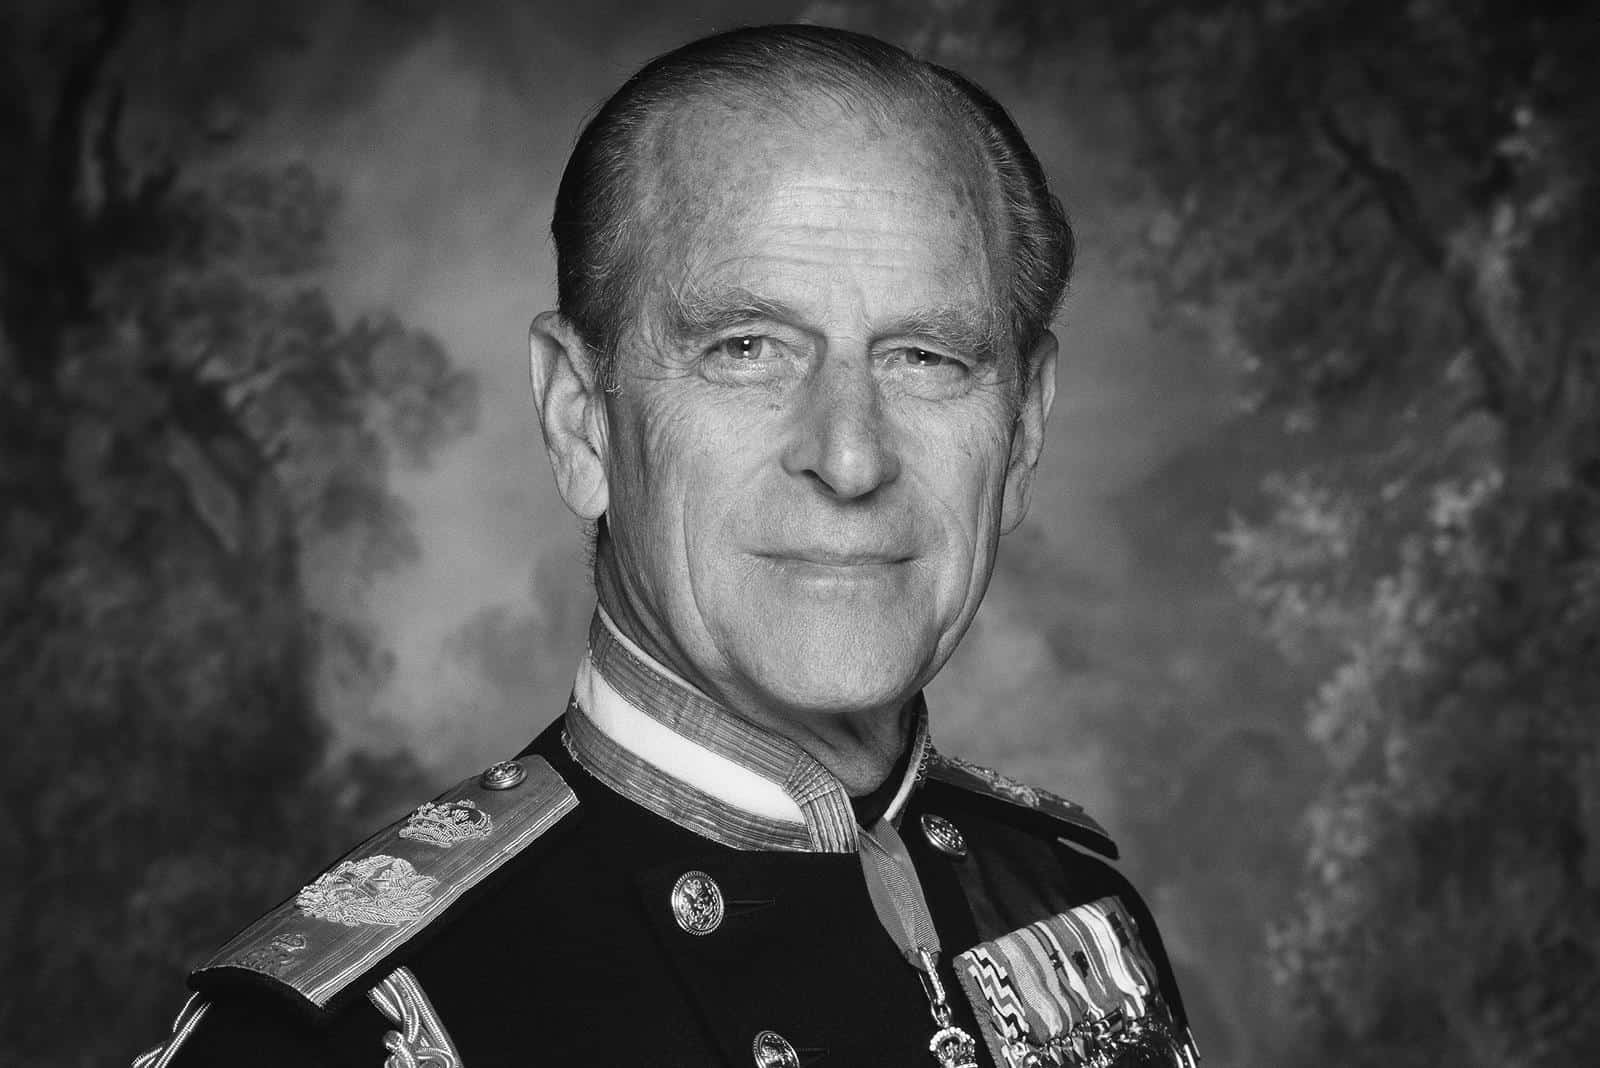 Príncipe Philip, marido da Rainha Elizabeth, morre aos 99 anos